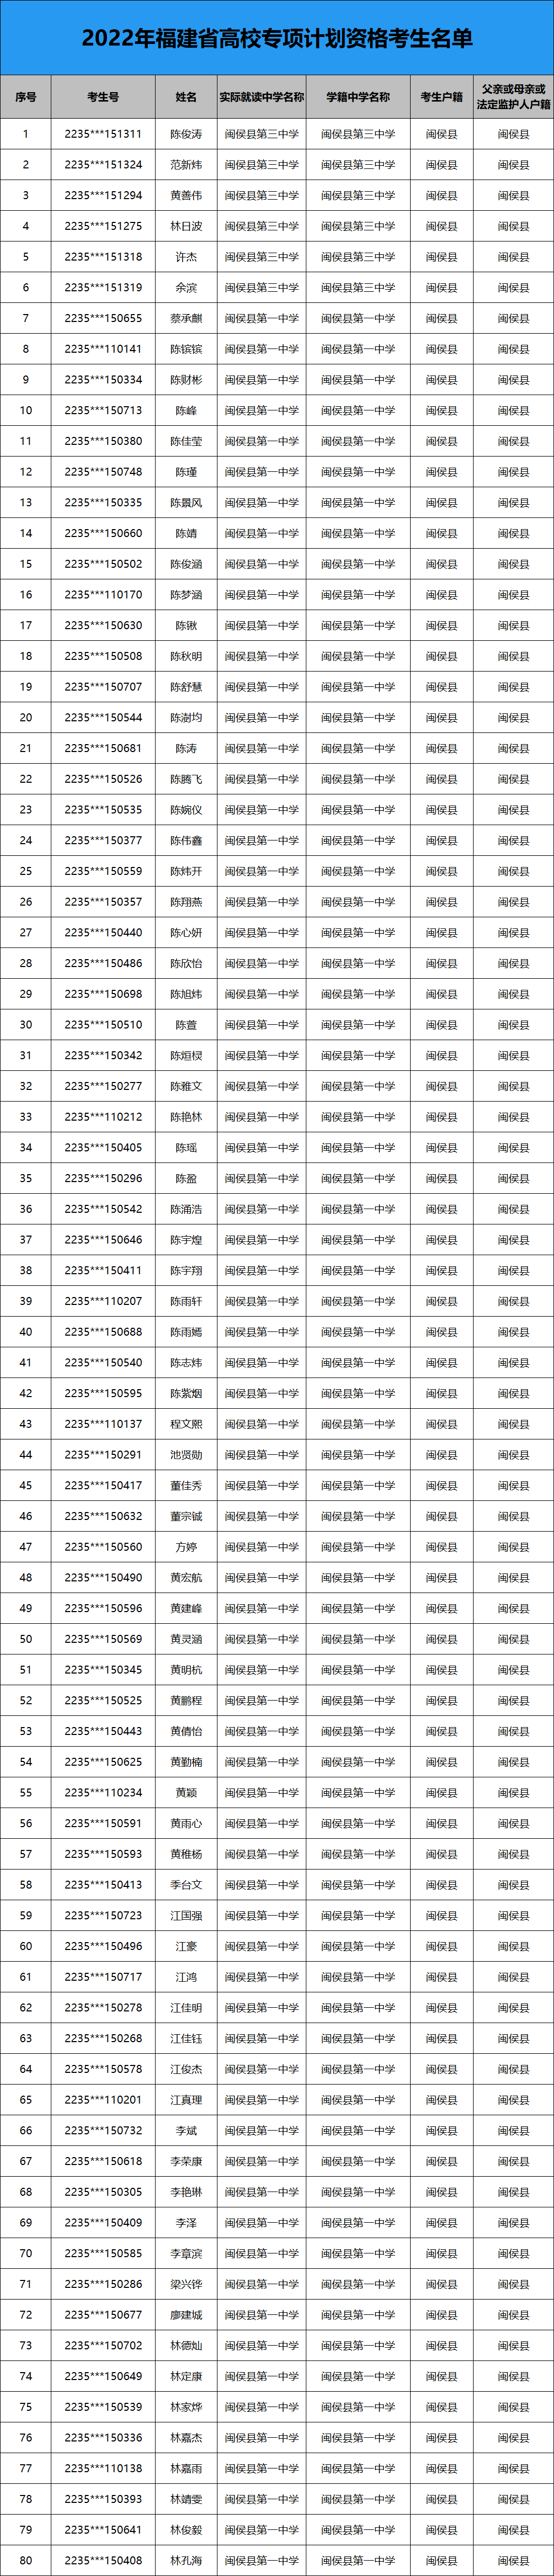 2022年福建省高校专项计划资格考生名单公示